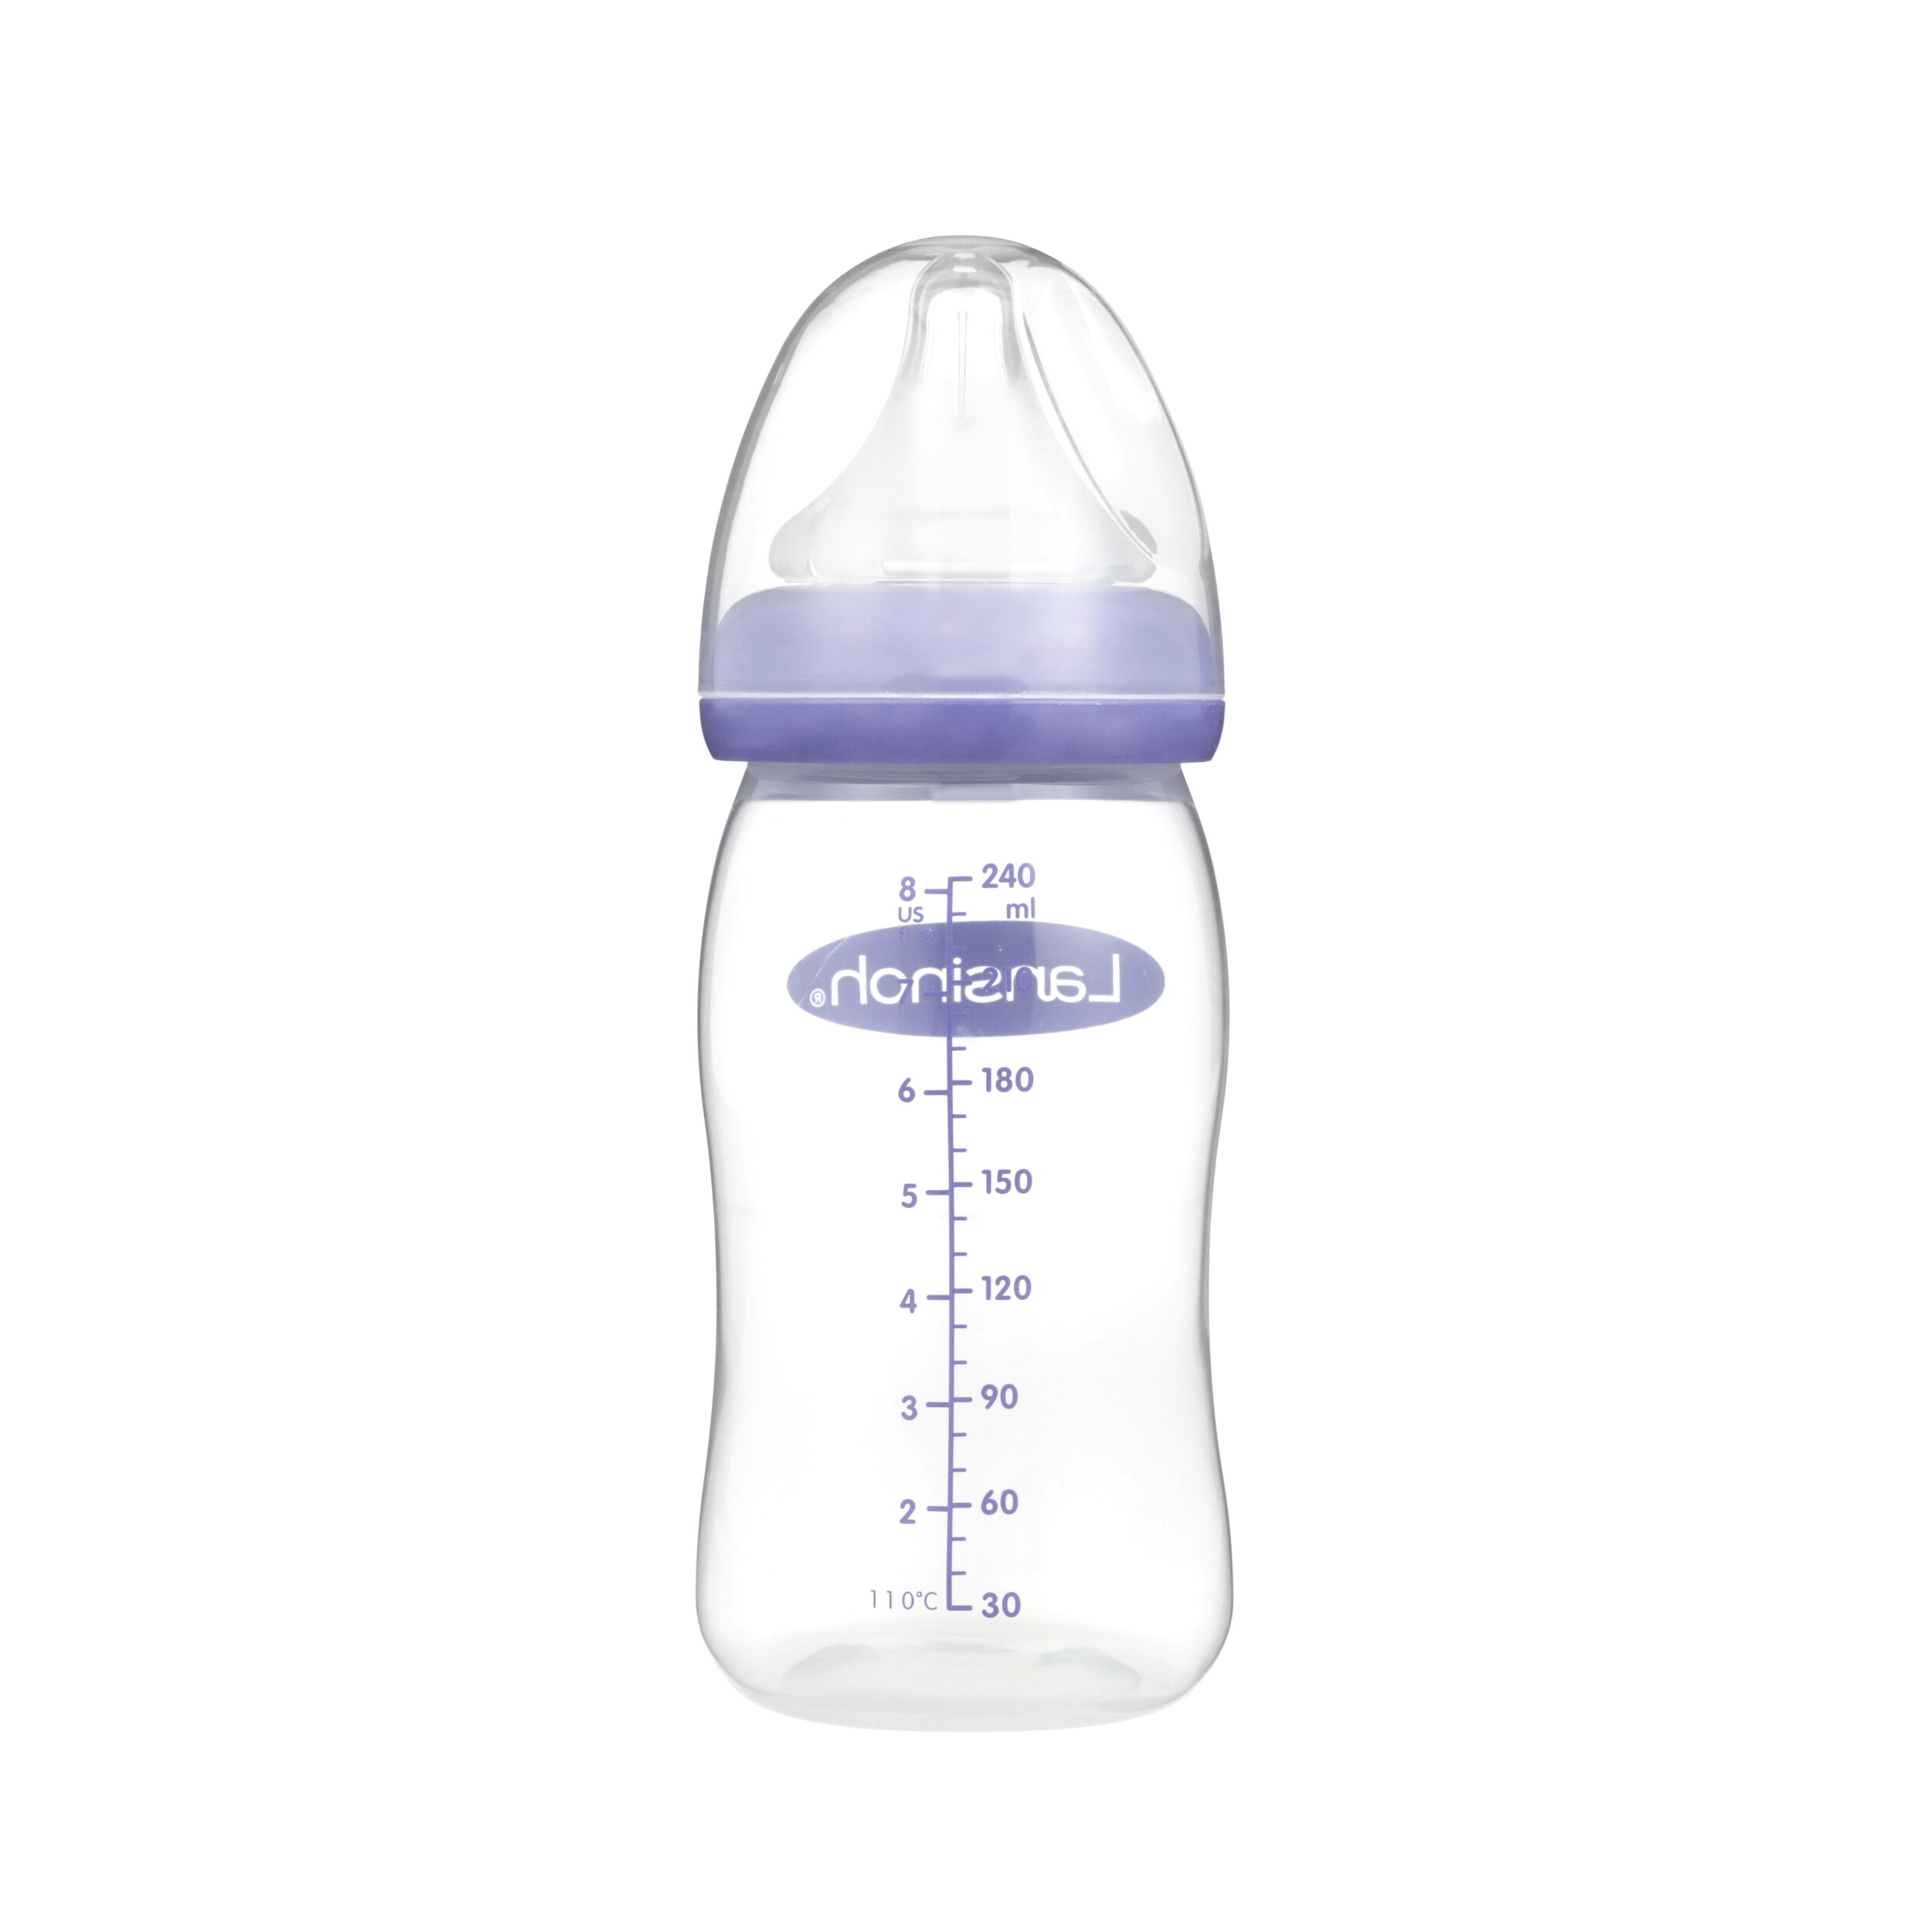 Lansinoh Breastmilk Feeding Glass Bottle, 8 Oz